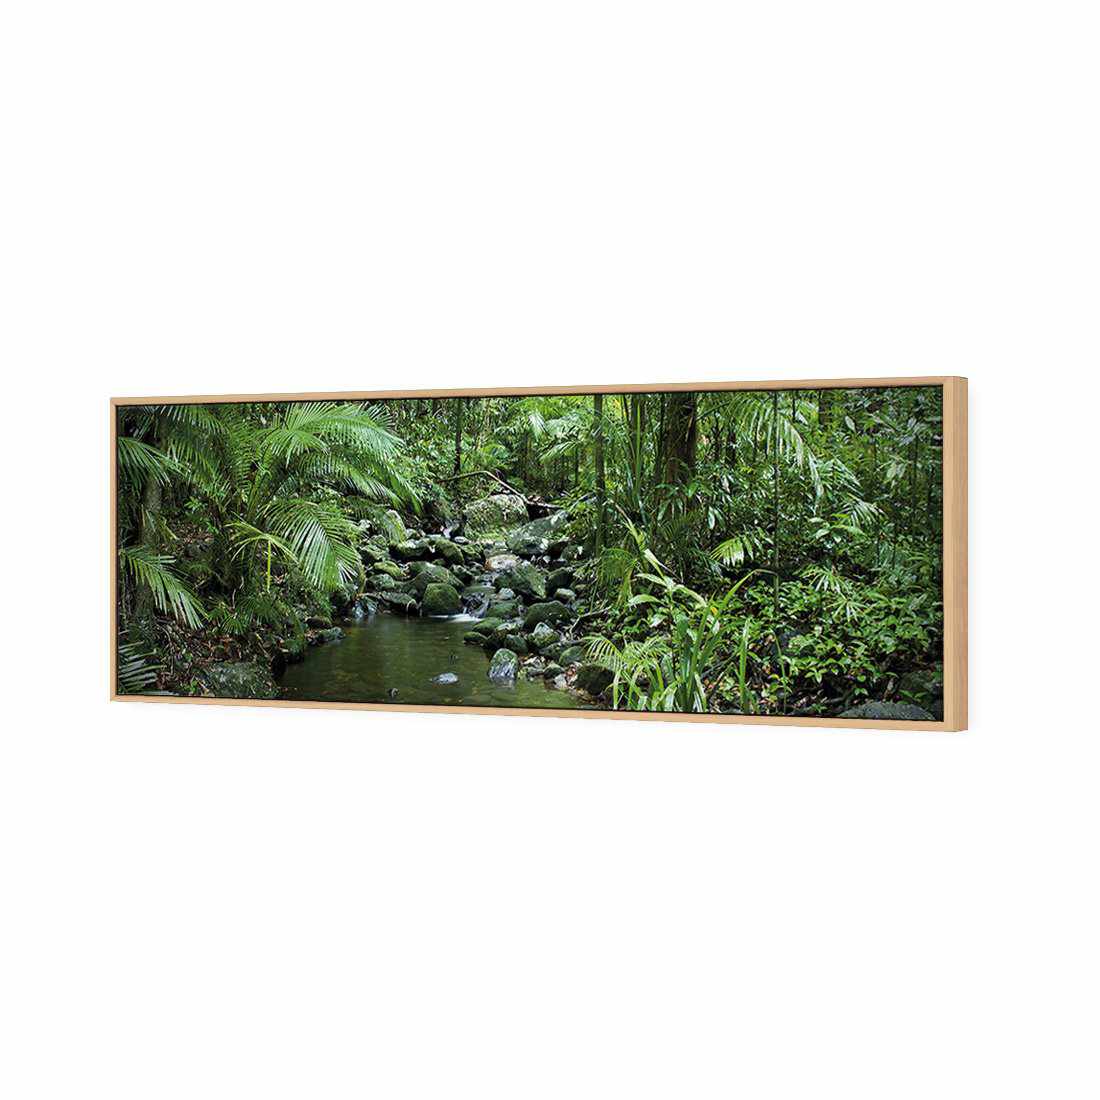 Mossman River In Daintree Rainforest Canvas Art-Canvas-Wall Art Designs-60x20cm-Canvas - Oak Frame-Wall Art Designs